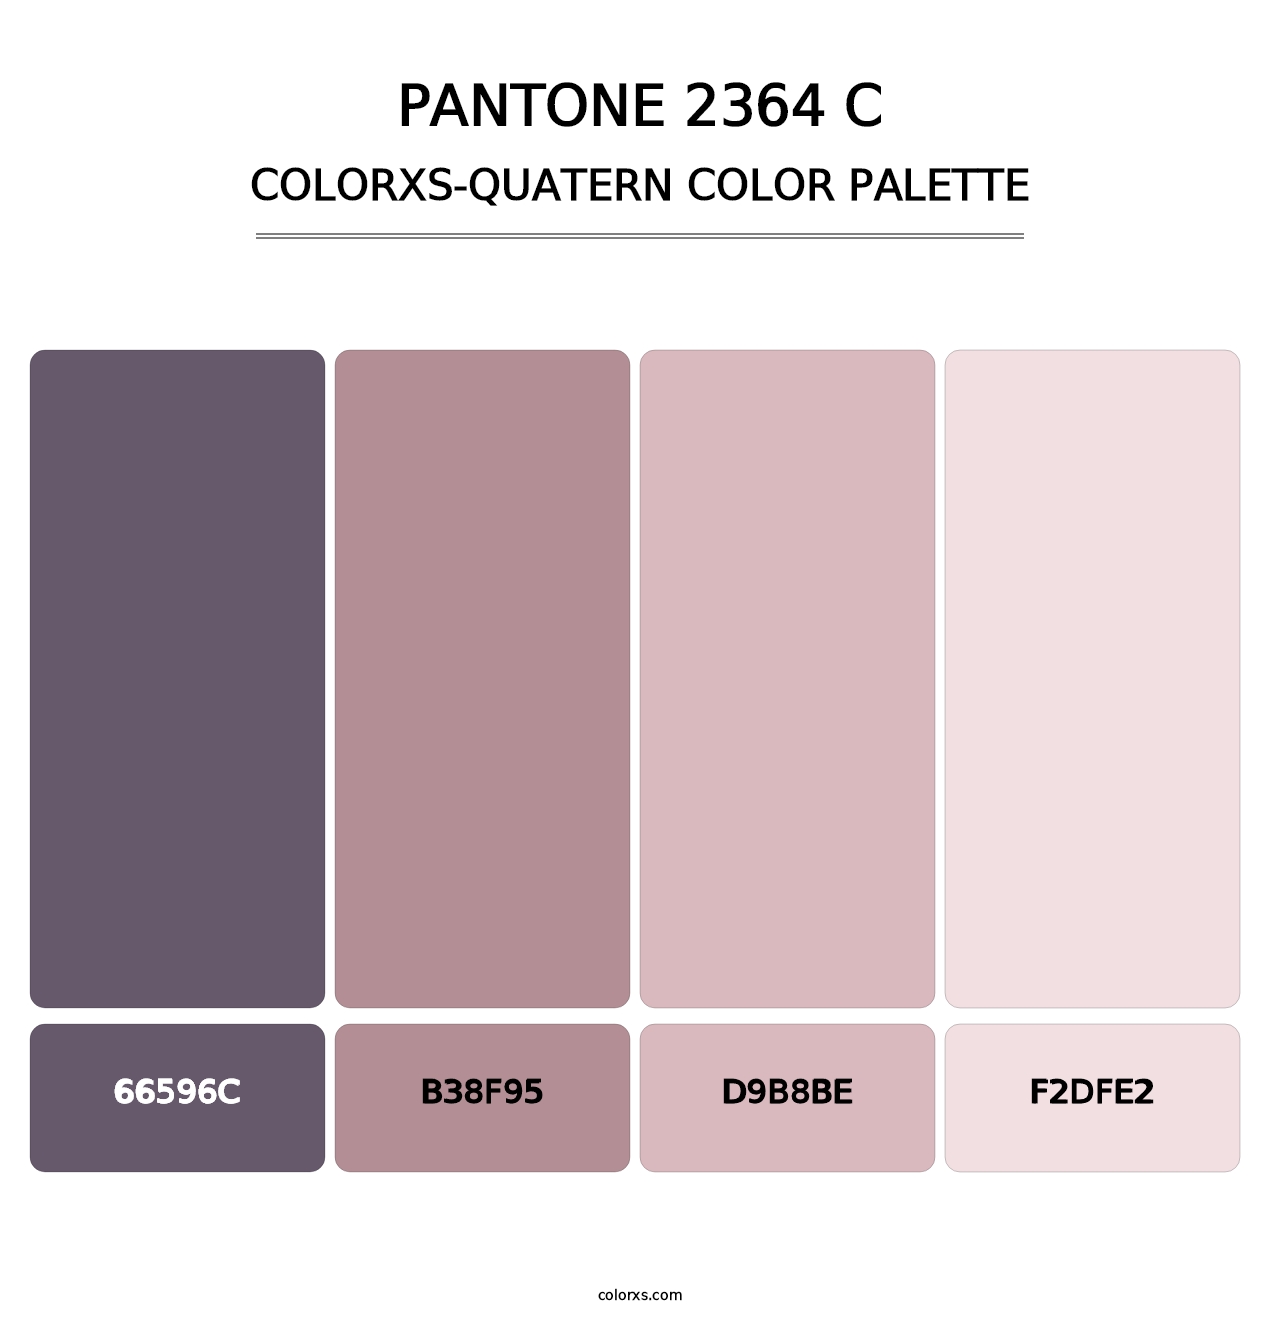 PANTONE 2364 C - Colorxs Quatern Palette